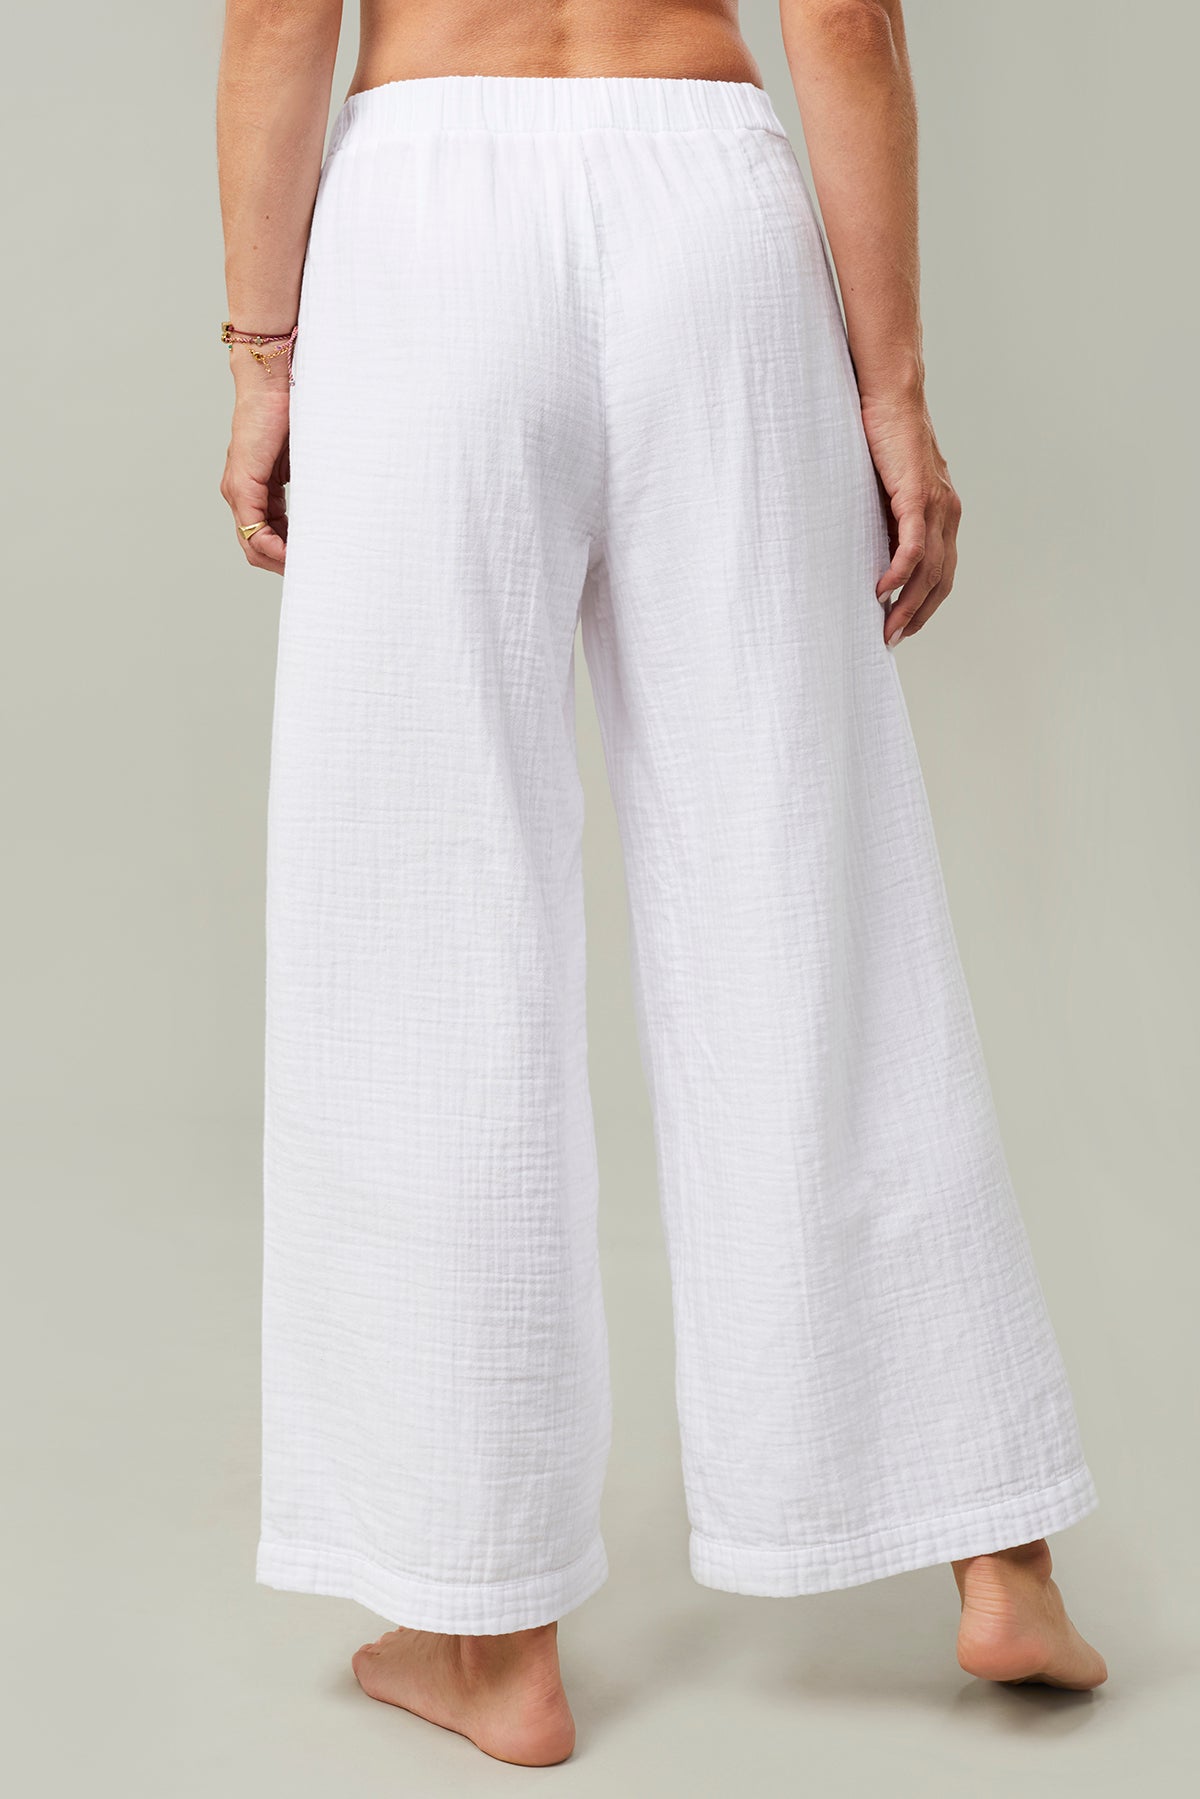 Mandala Yoga Pant Weiß Rückseite - Nomad Pants